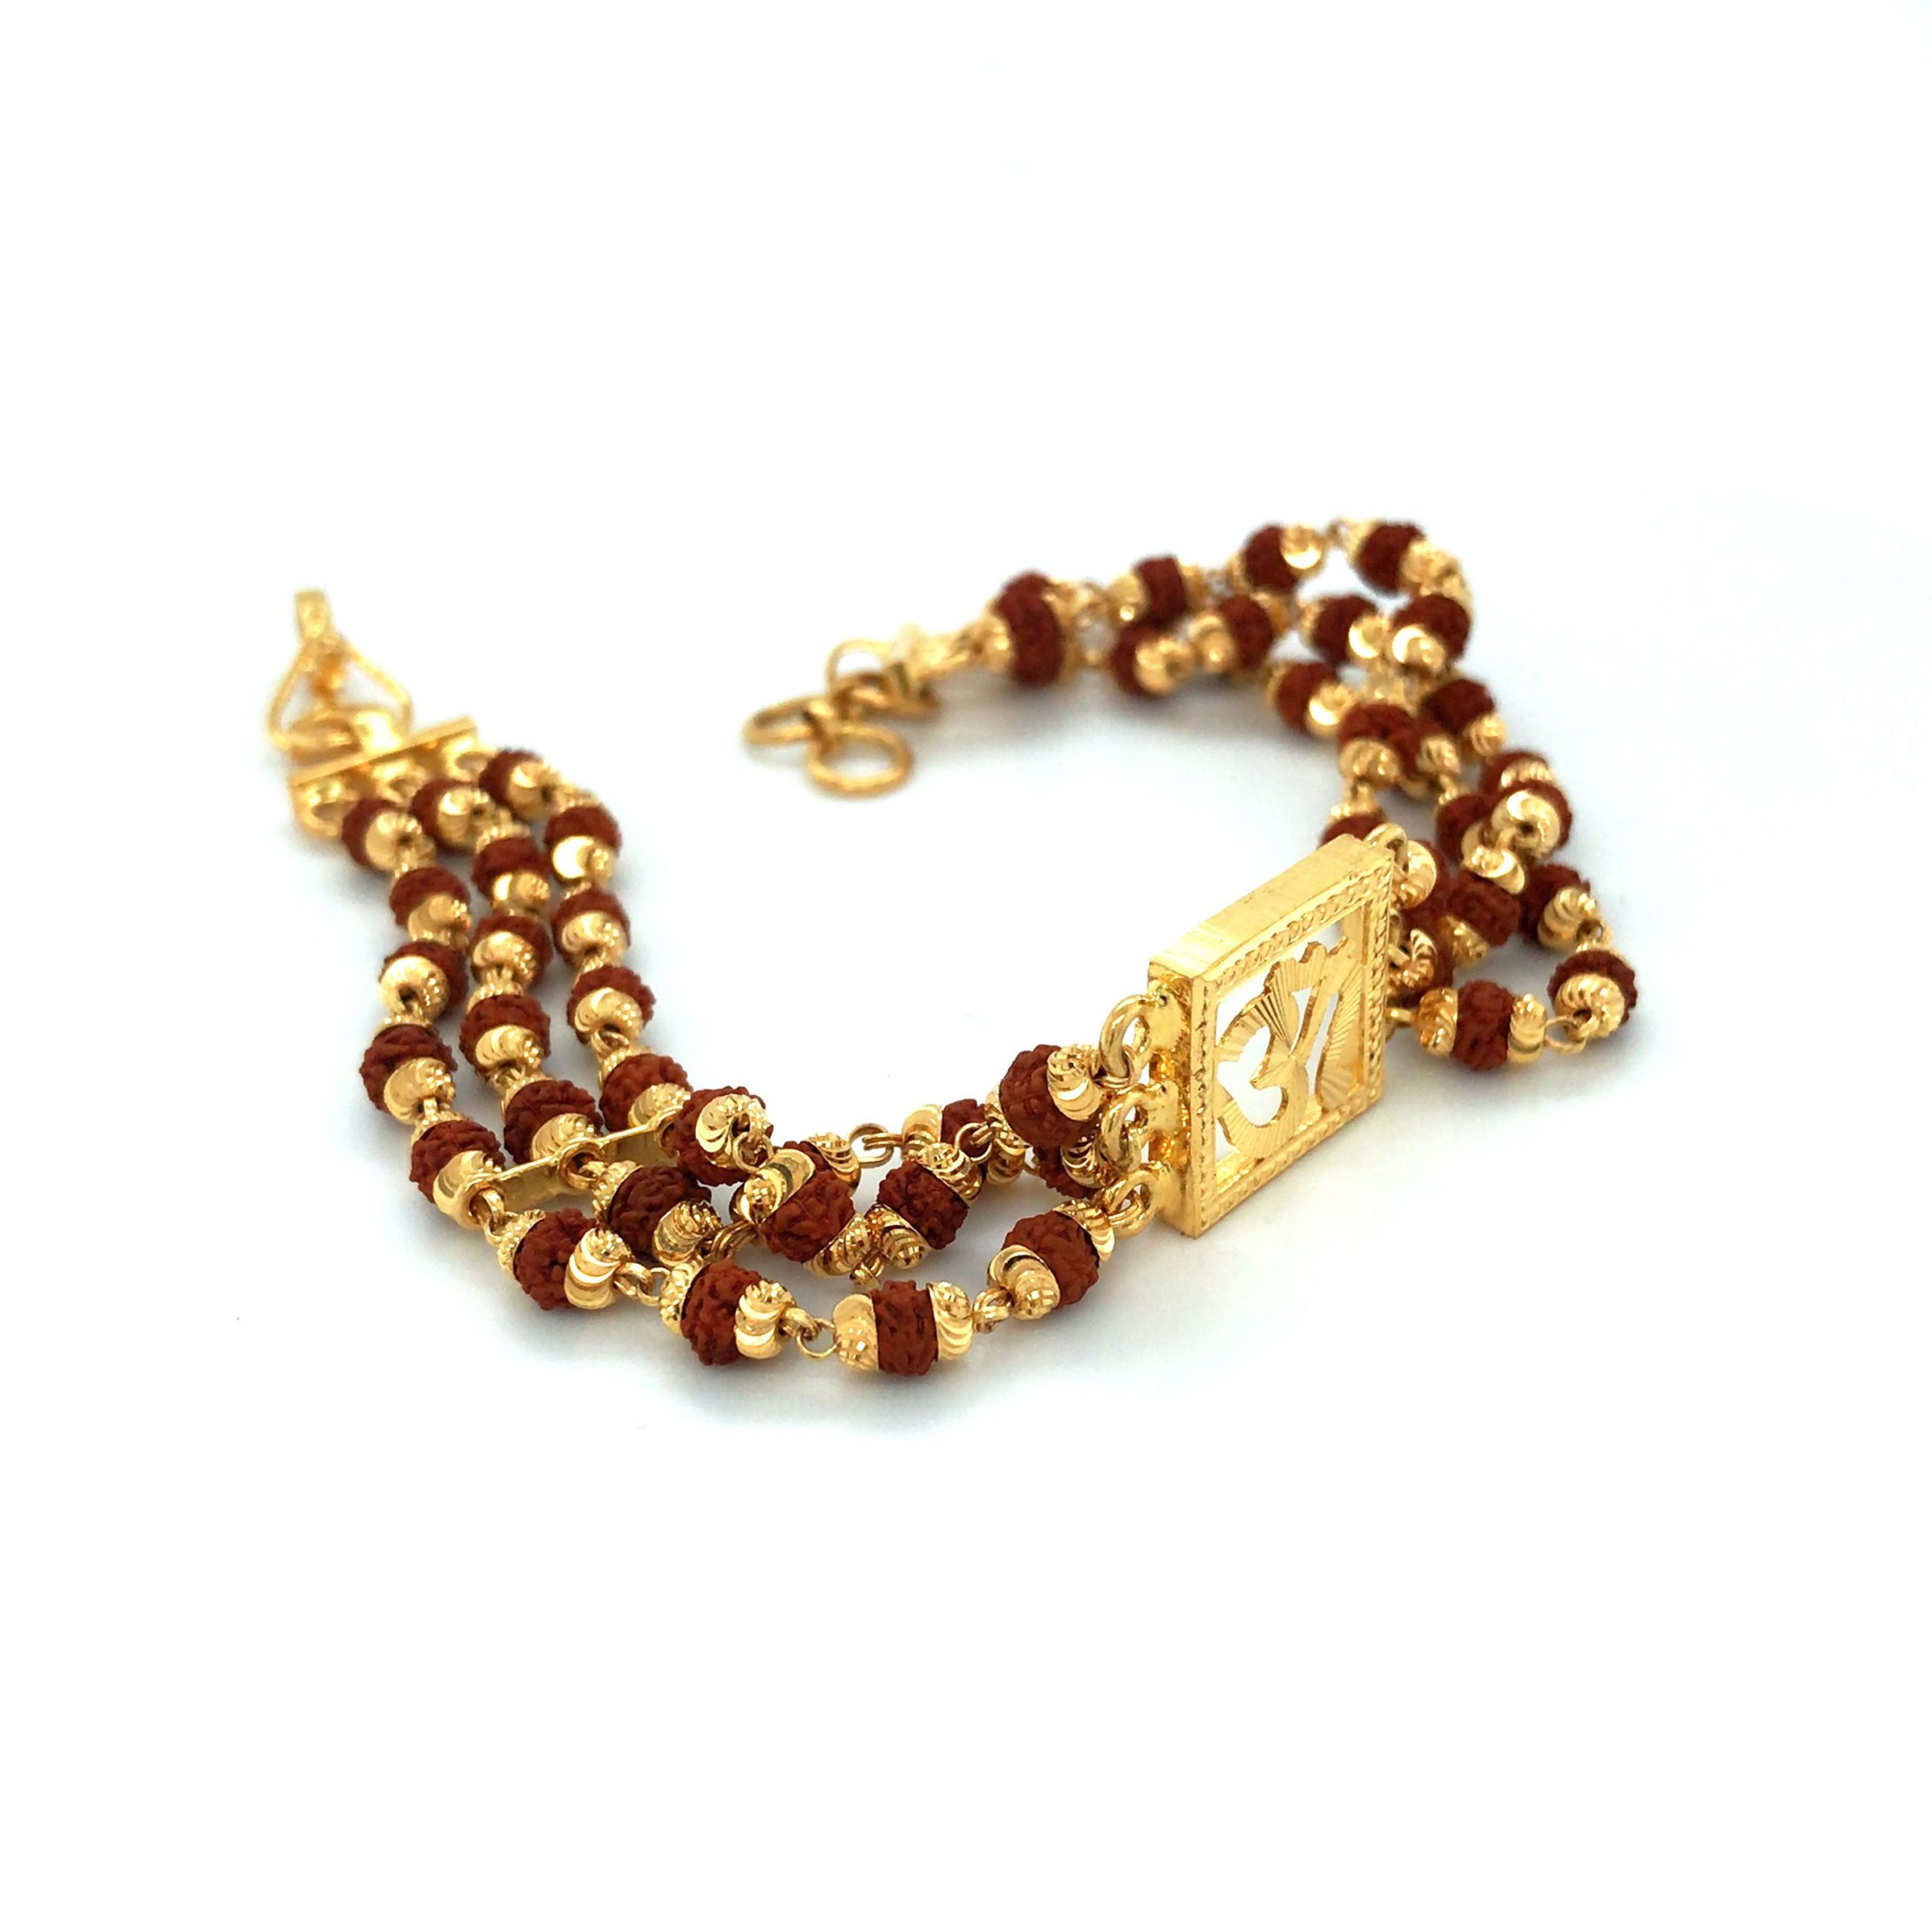 Rudraksha Bracelet With Golden Coloured Metal Caps - Etsy